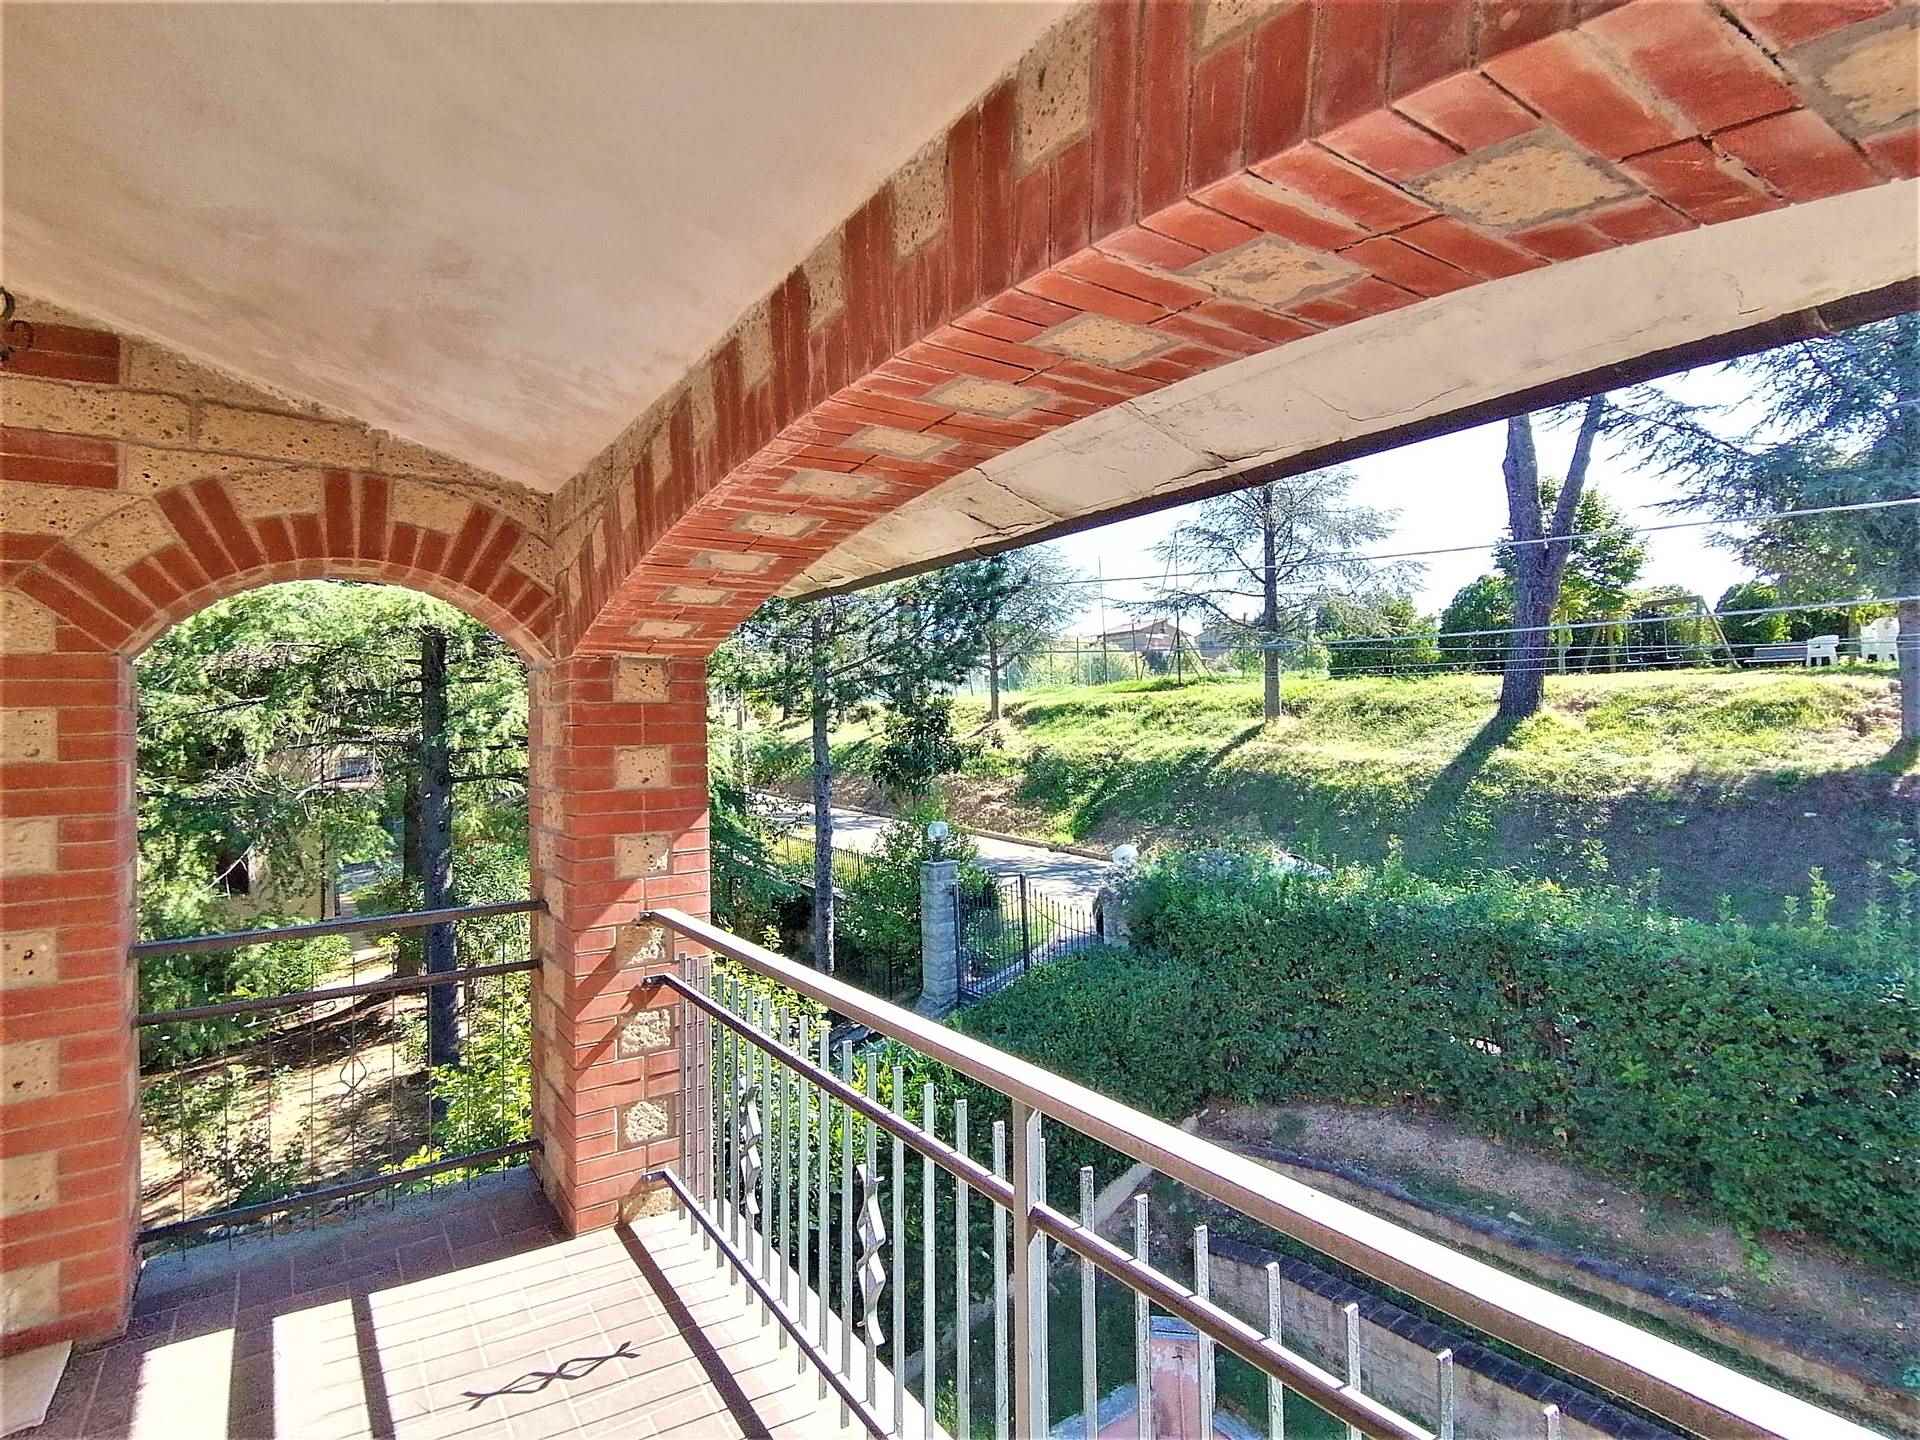 Villa Bifamiliare in vendita a Parrano, 6 locali, zona Località: CENTRO, prezzo € 150.000 | PortaleAgenzieImmobiliari.it